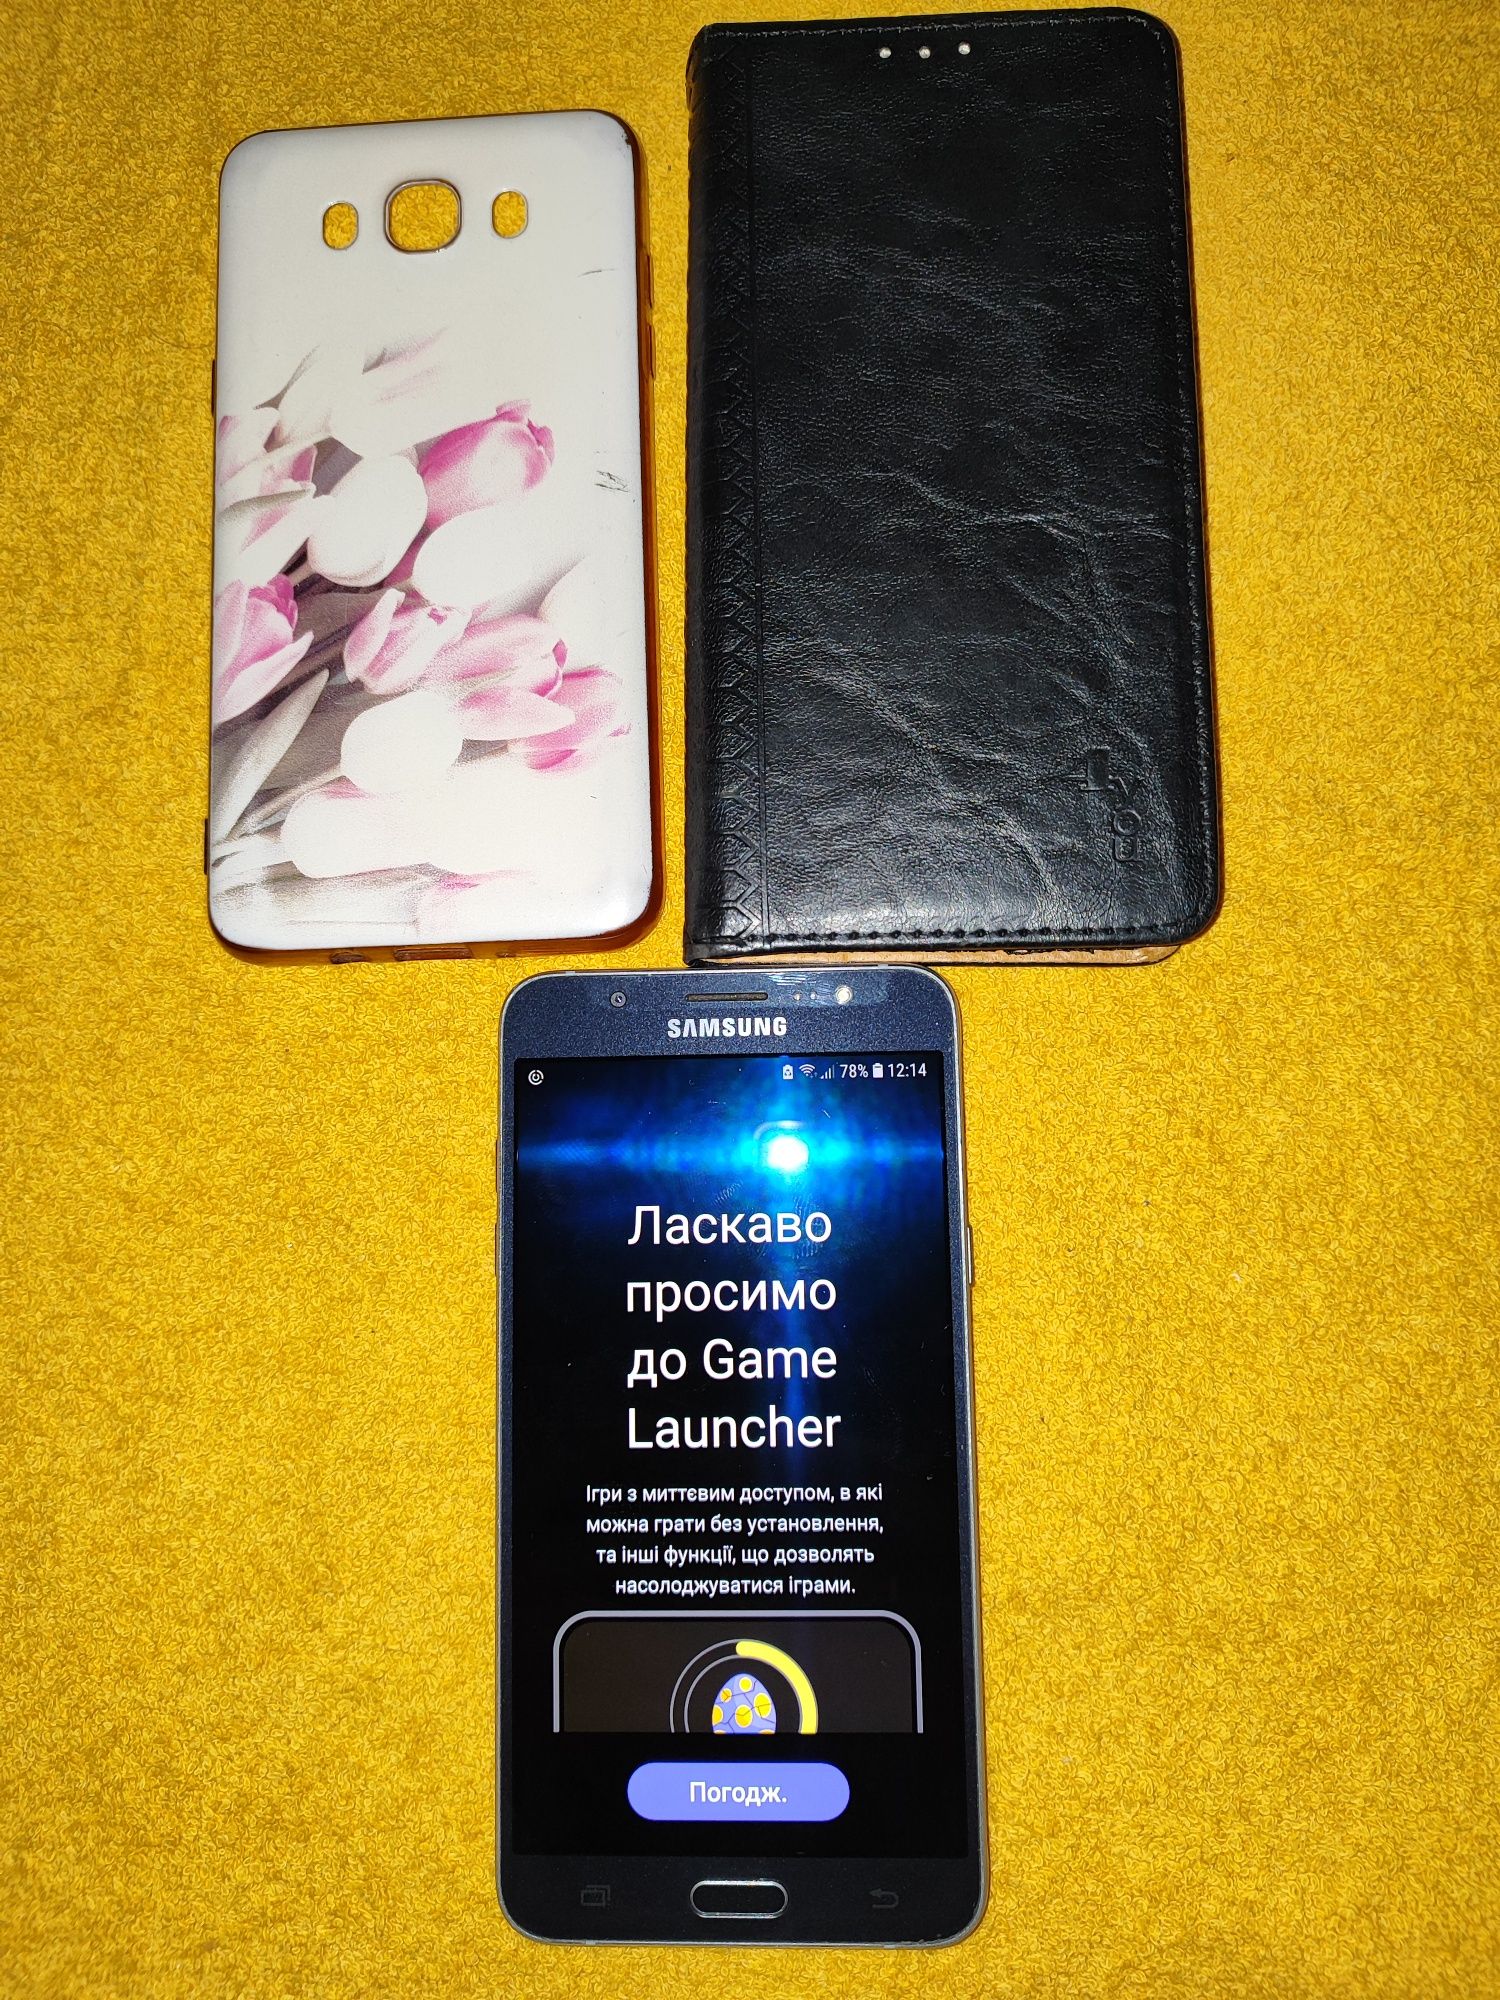 Смартфон Samsung Galaxy J7 710F все працює 100%, бронестекло, два чехл